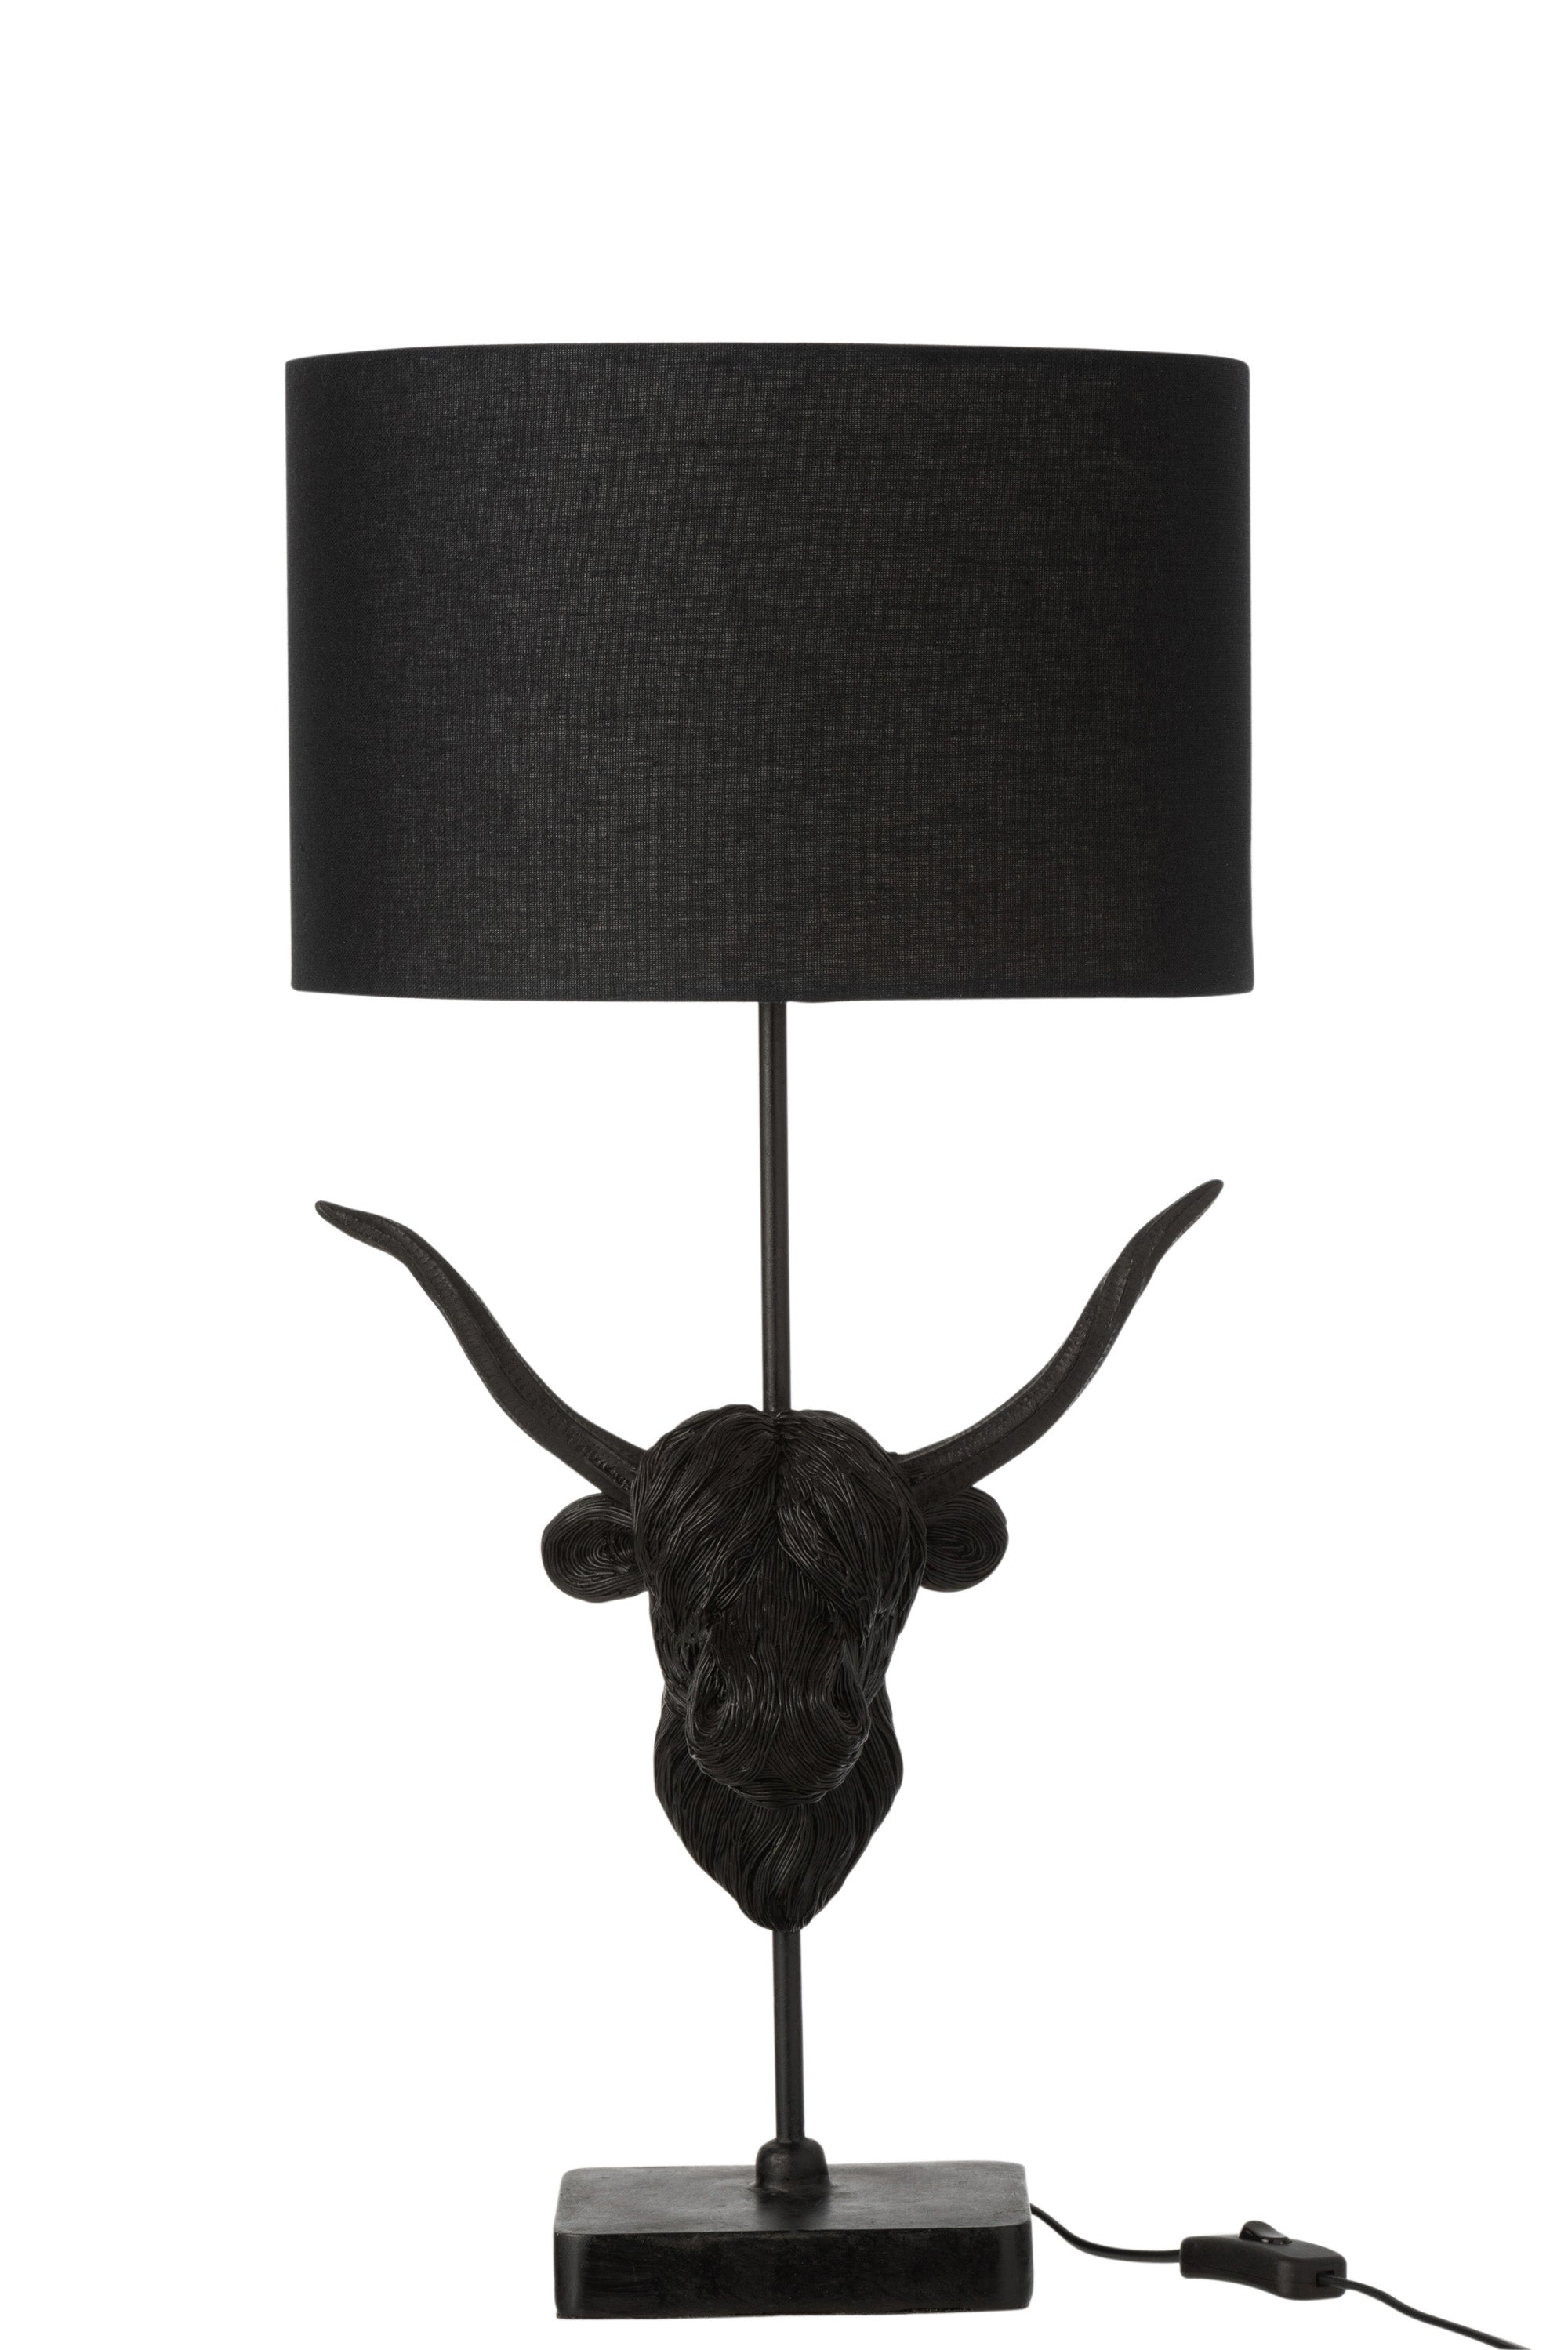 Schwarze Tischlampe; das Lampengestell besteht aus einem, auf einem kleinen rechteckigen Sockel befestigtem Metallstab, an dem mittig ein Bullenkopf mit langen Hörnern angebracht ist, darüber ein ebenfalls schwarzer, runder Lampenschirm.